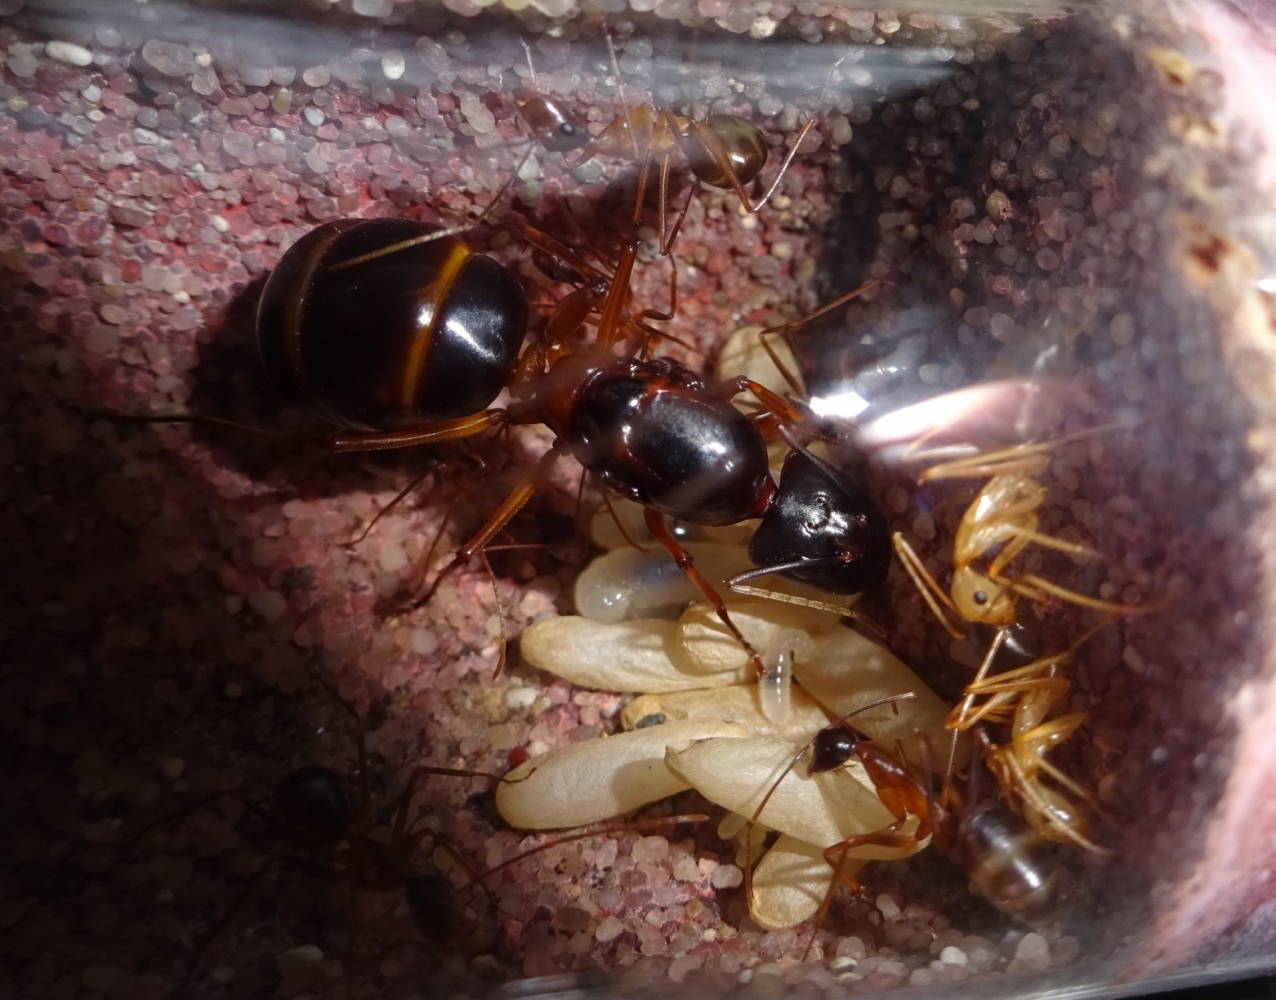 Camponotus festinus